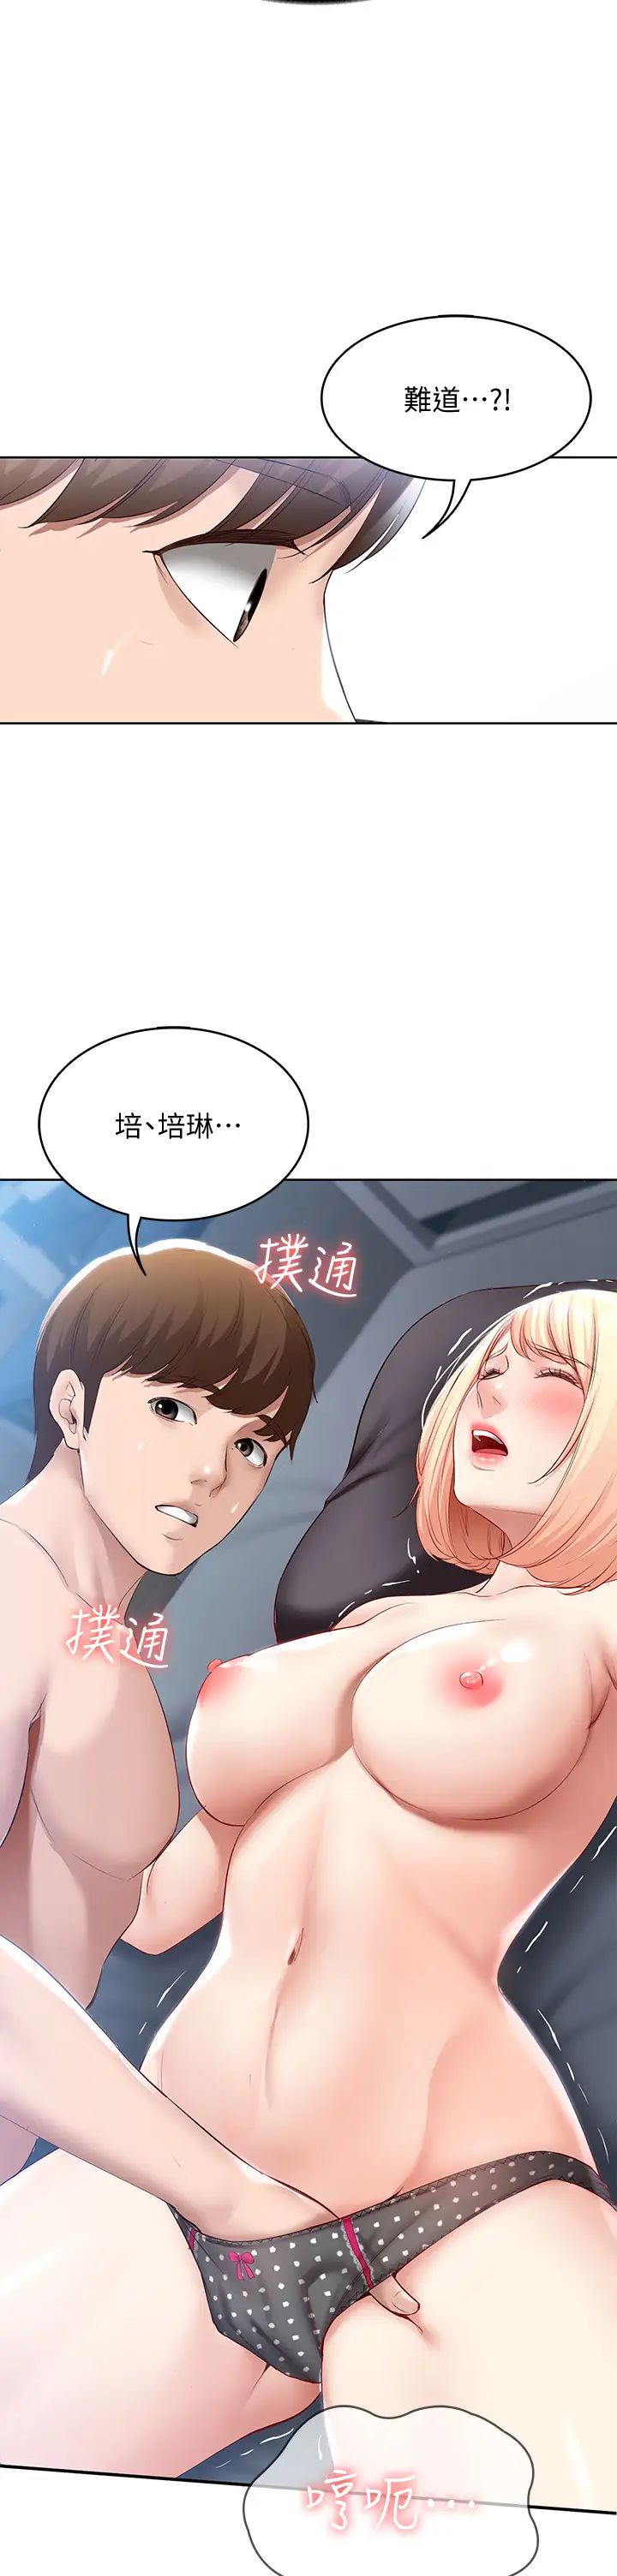 韩国污漫画 寄宿日記 第62话培琳可口的酥胸 26